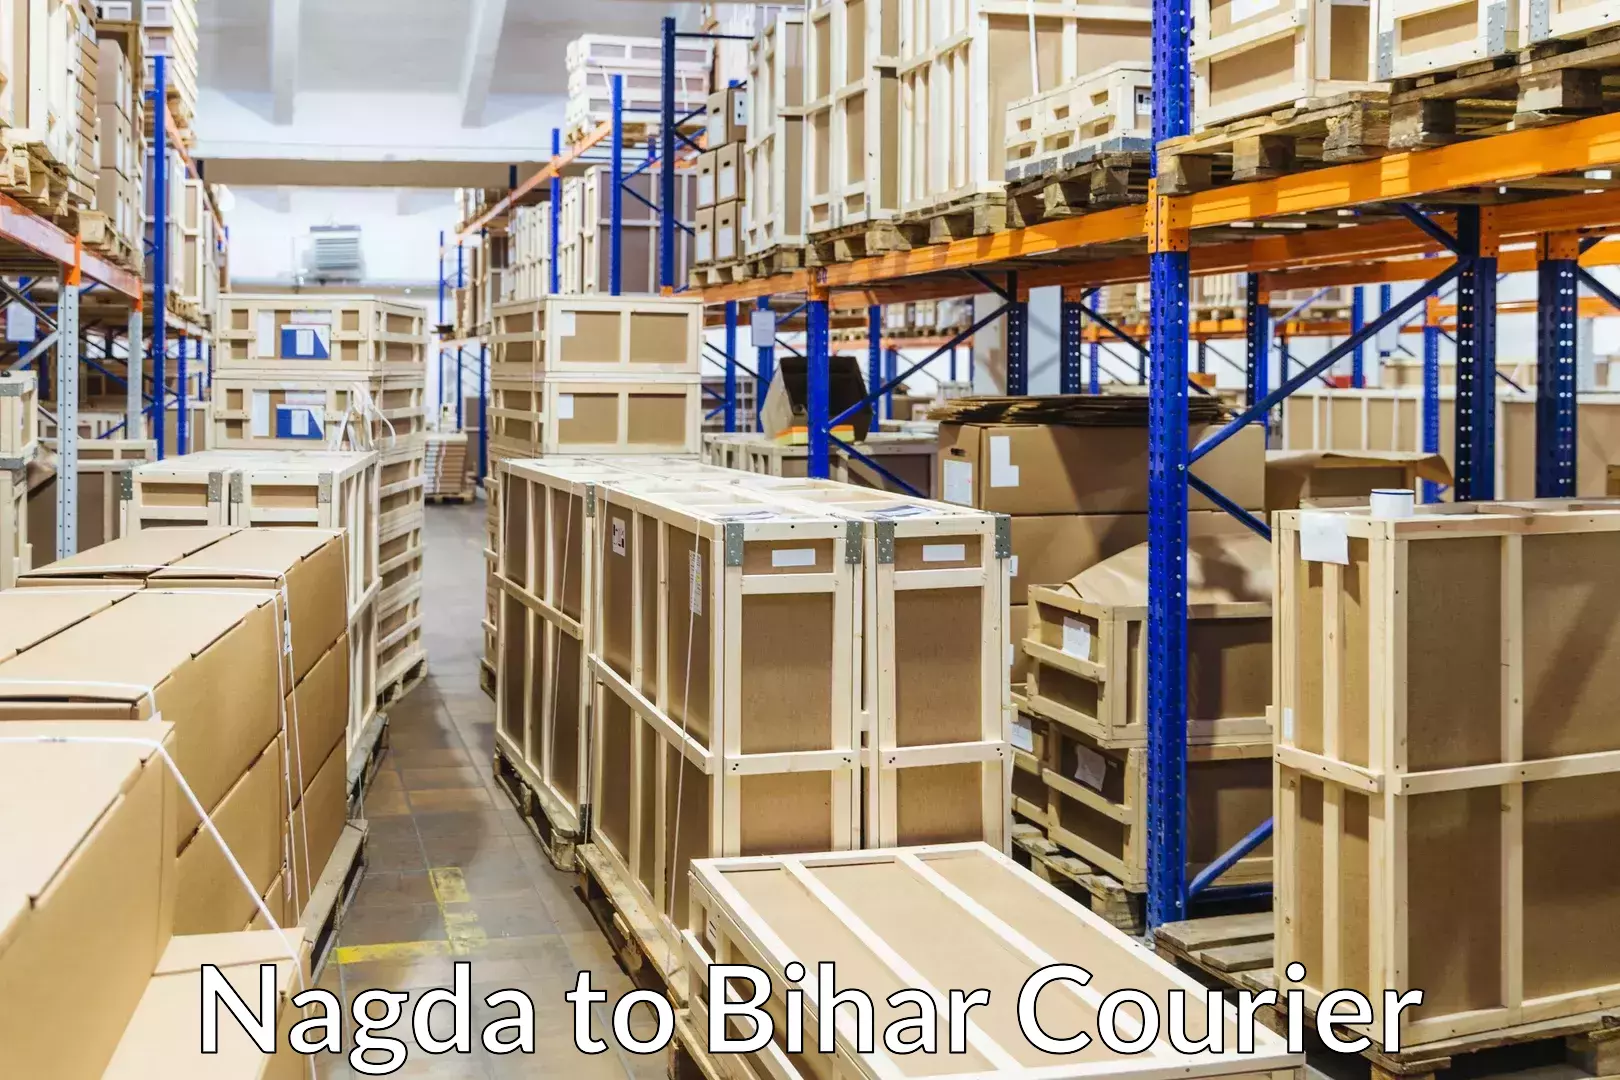 Household movers Nagda to Bihar